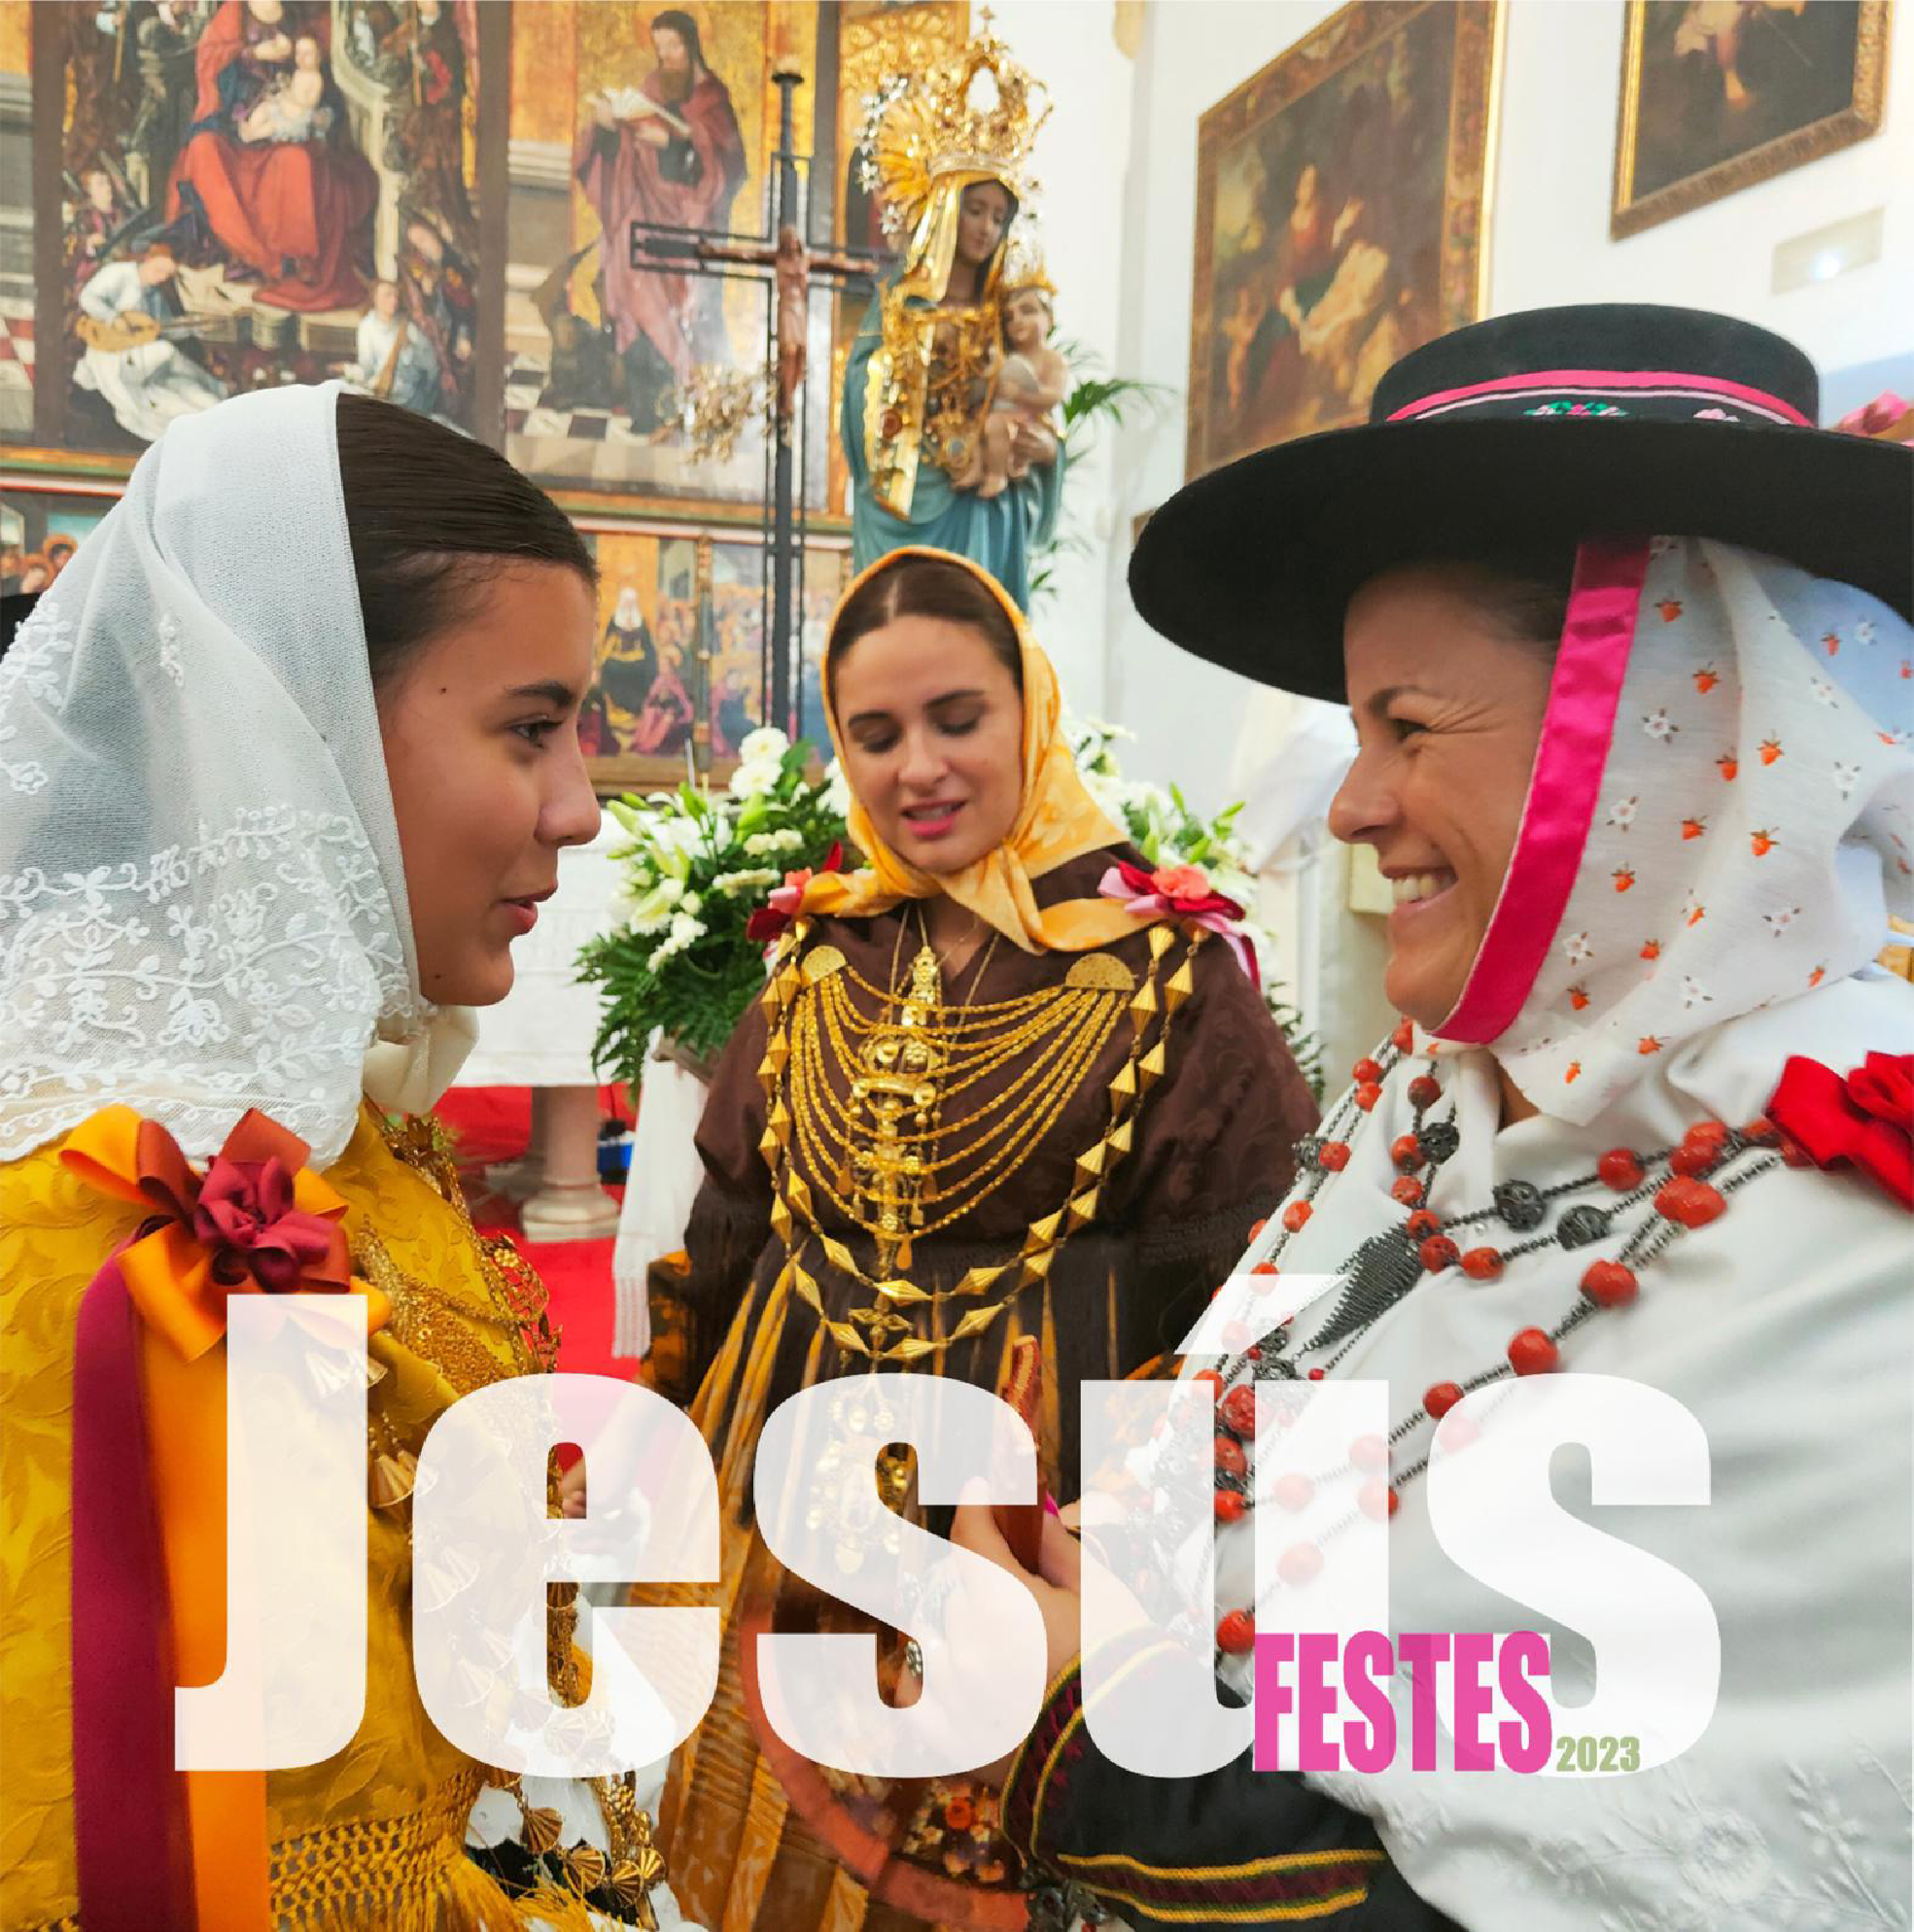 Les festes de Jesús començaran aquest dissabte amb una jornada bolcada en la tradició eivissenques i comptaran amb una gran festa ‘flower power’